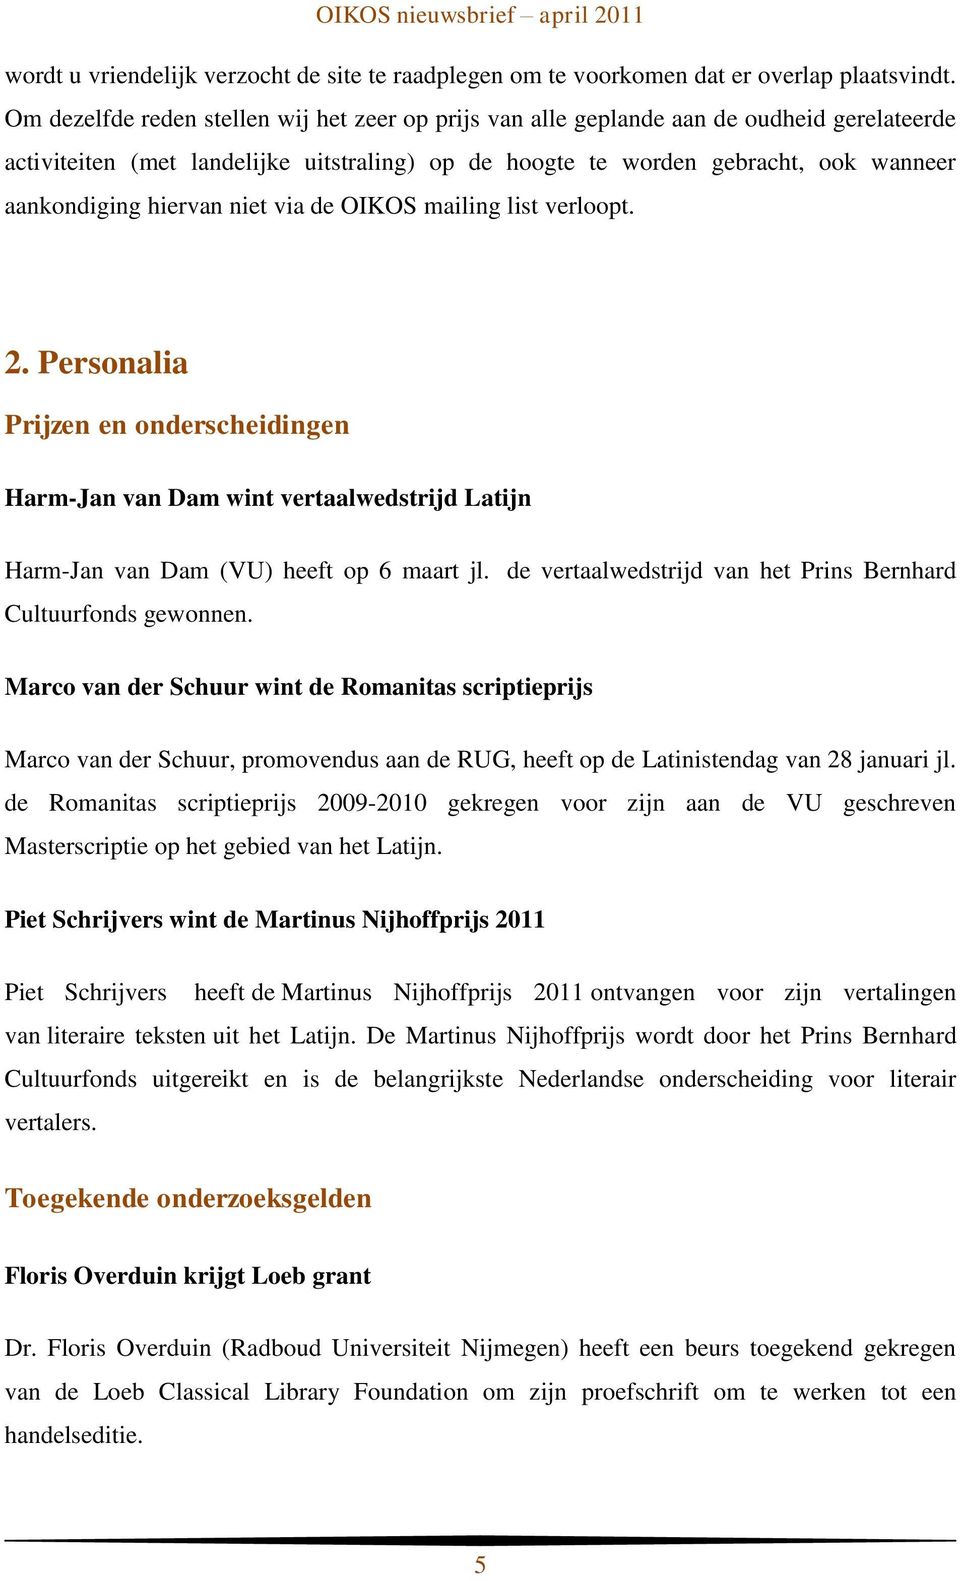 hiervan niet via de OIKOS mailing list verloopt. 2. Personalia Prijzen en onderscheidingen Harm-Jan van Dam wint vertaalwedstrijd Latijn Harm-Jan van Dam (VU) heeft op 6 maart jl.